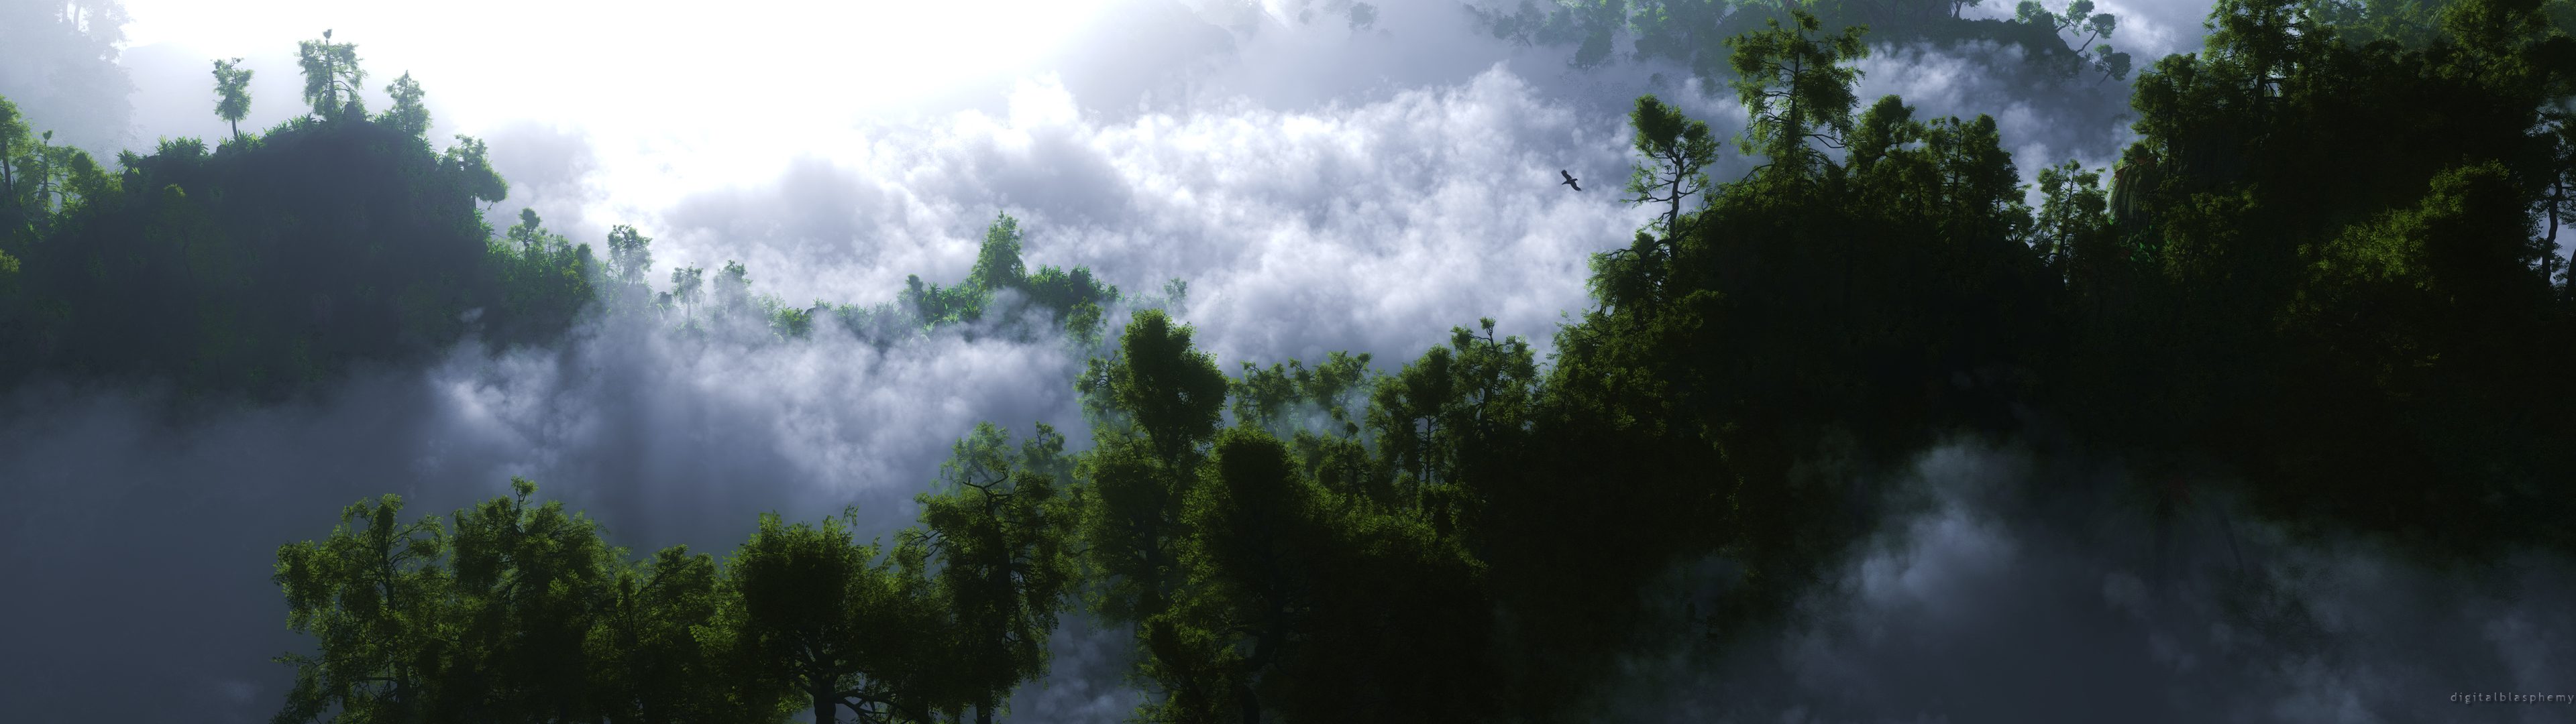 Скачать обои бесплатно Облака, Лес, Земля/природа картинка на рабочий стол ПК